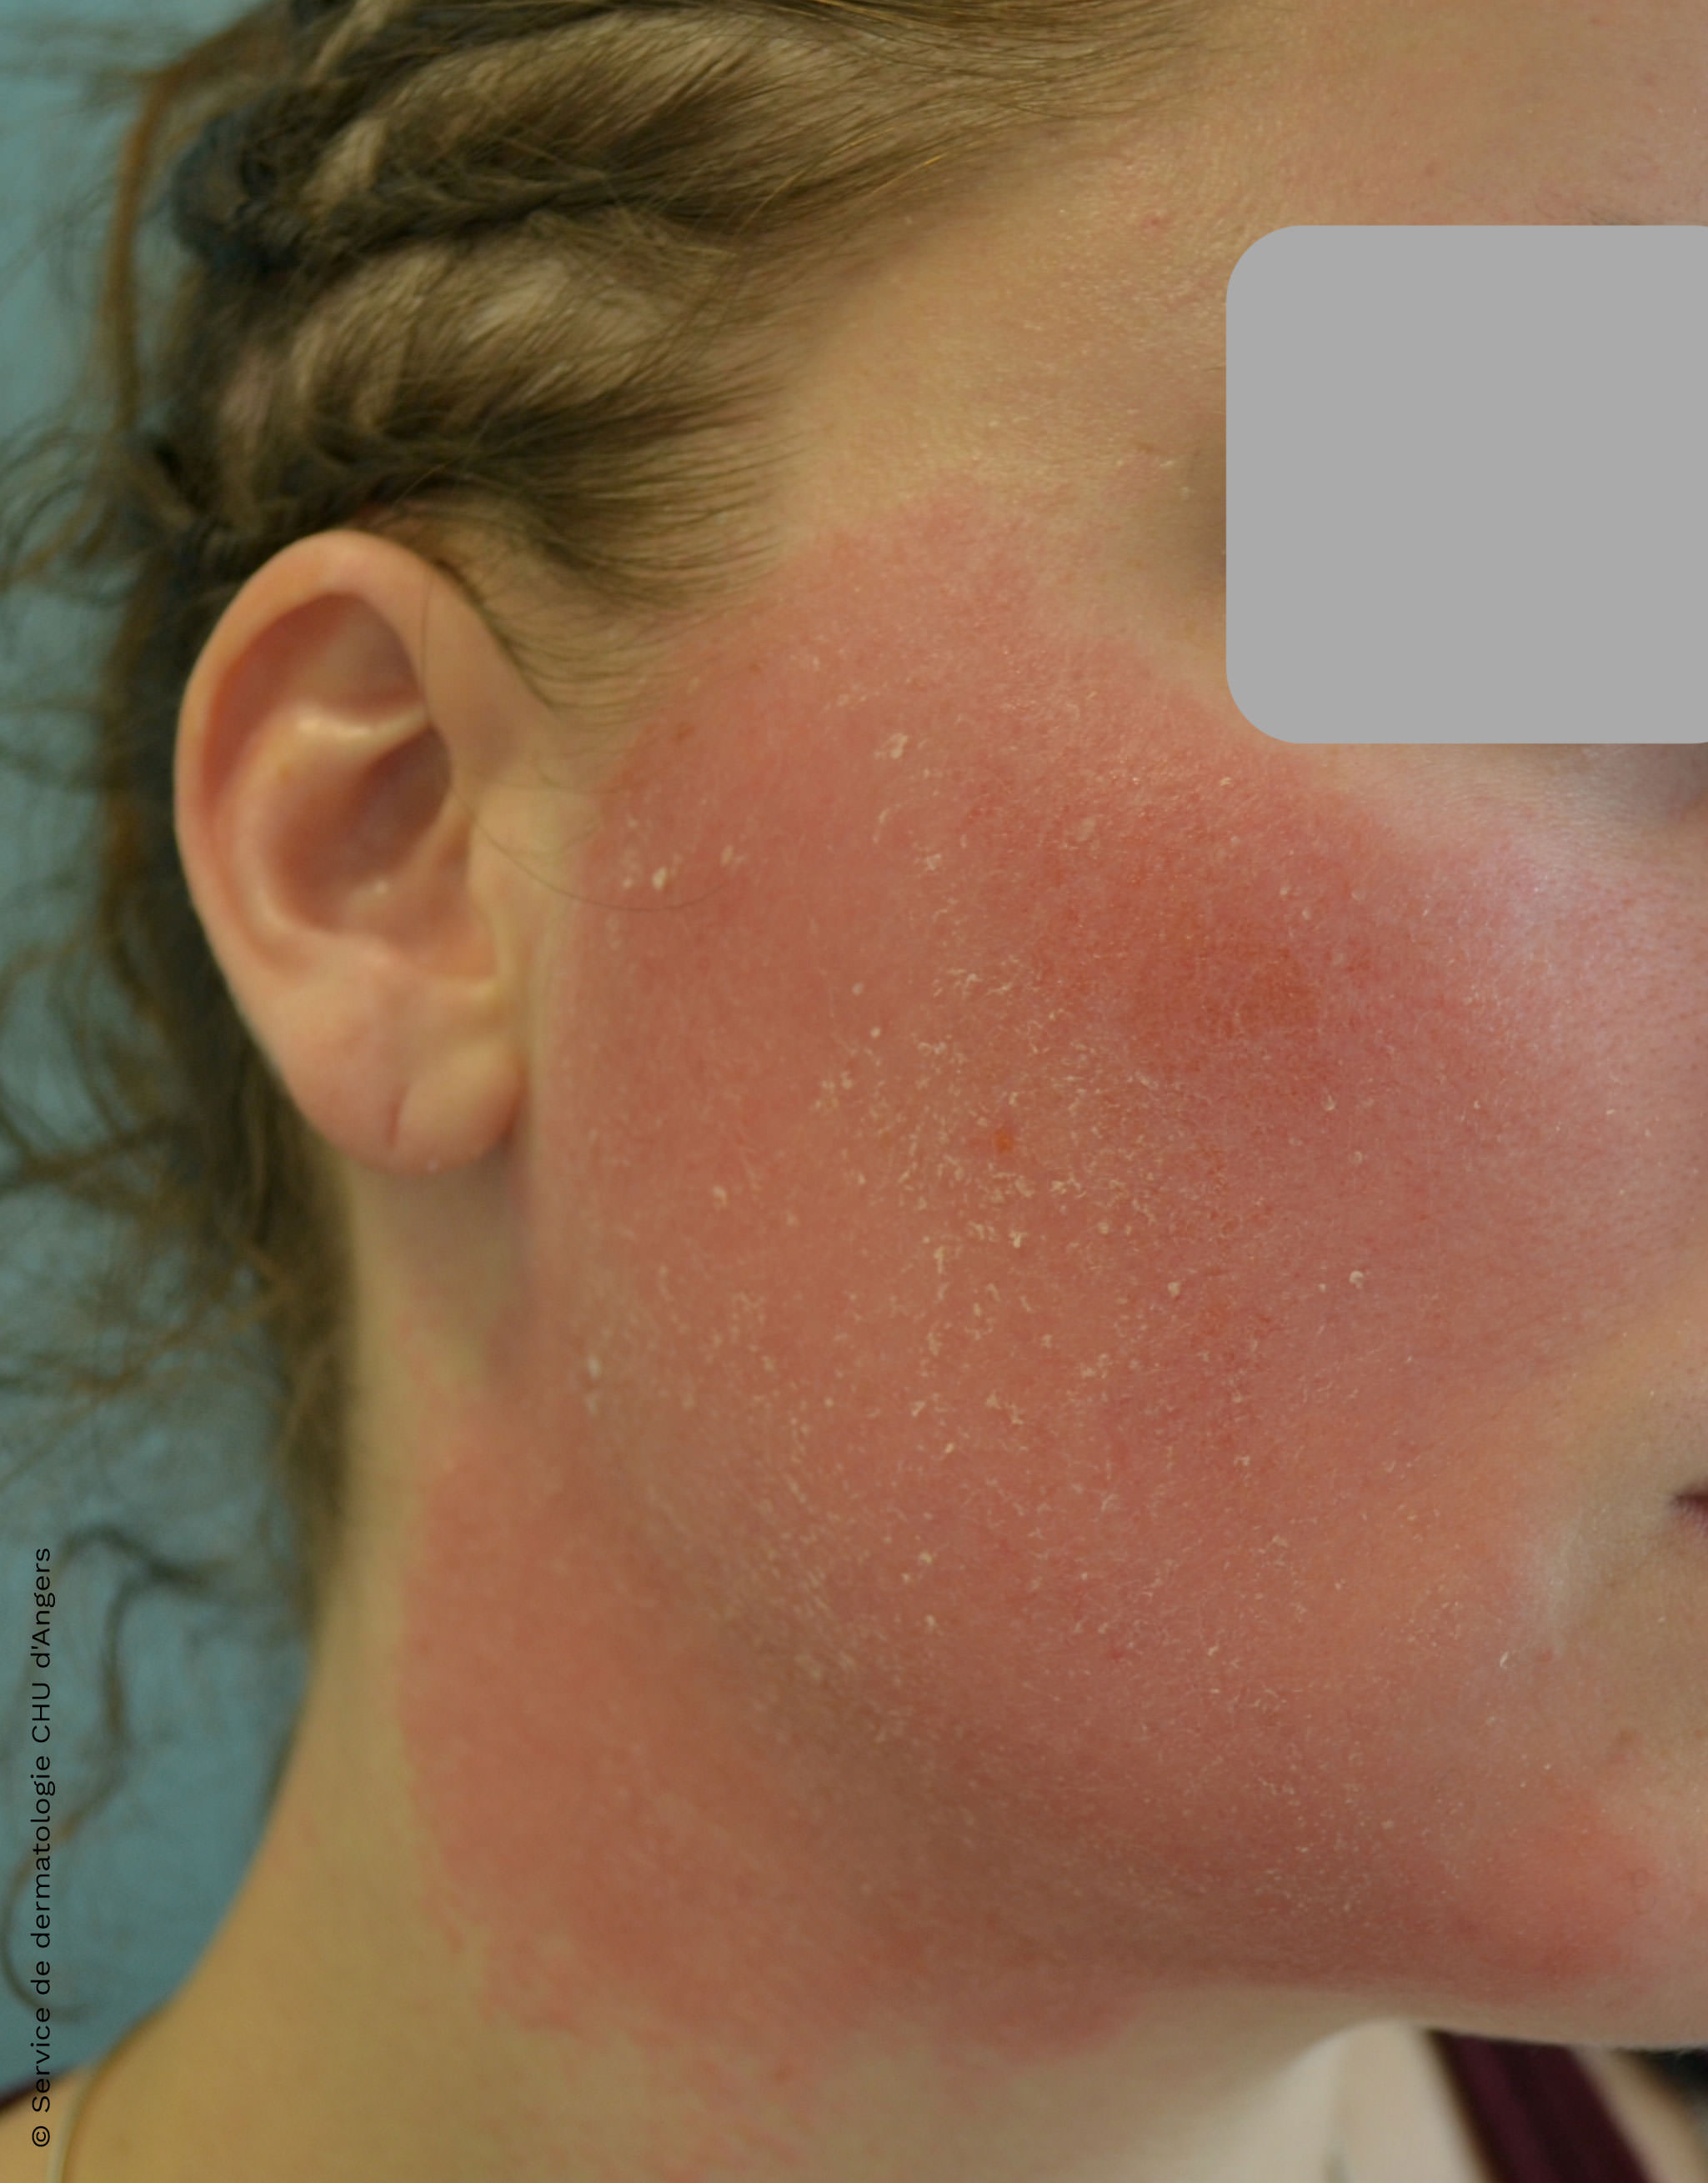 Contatta l'eczema del viso con un antimicotico